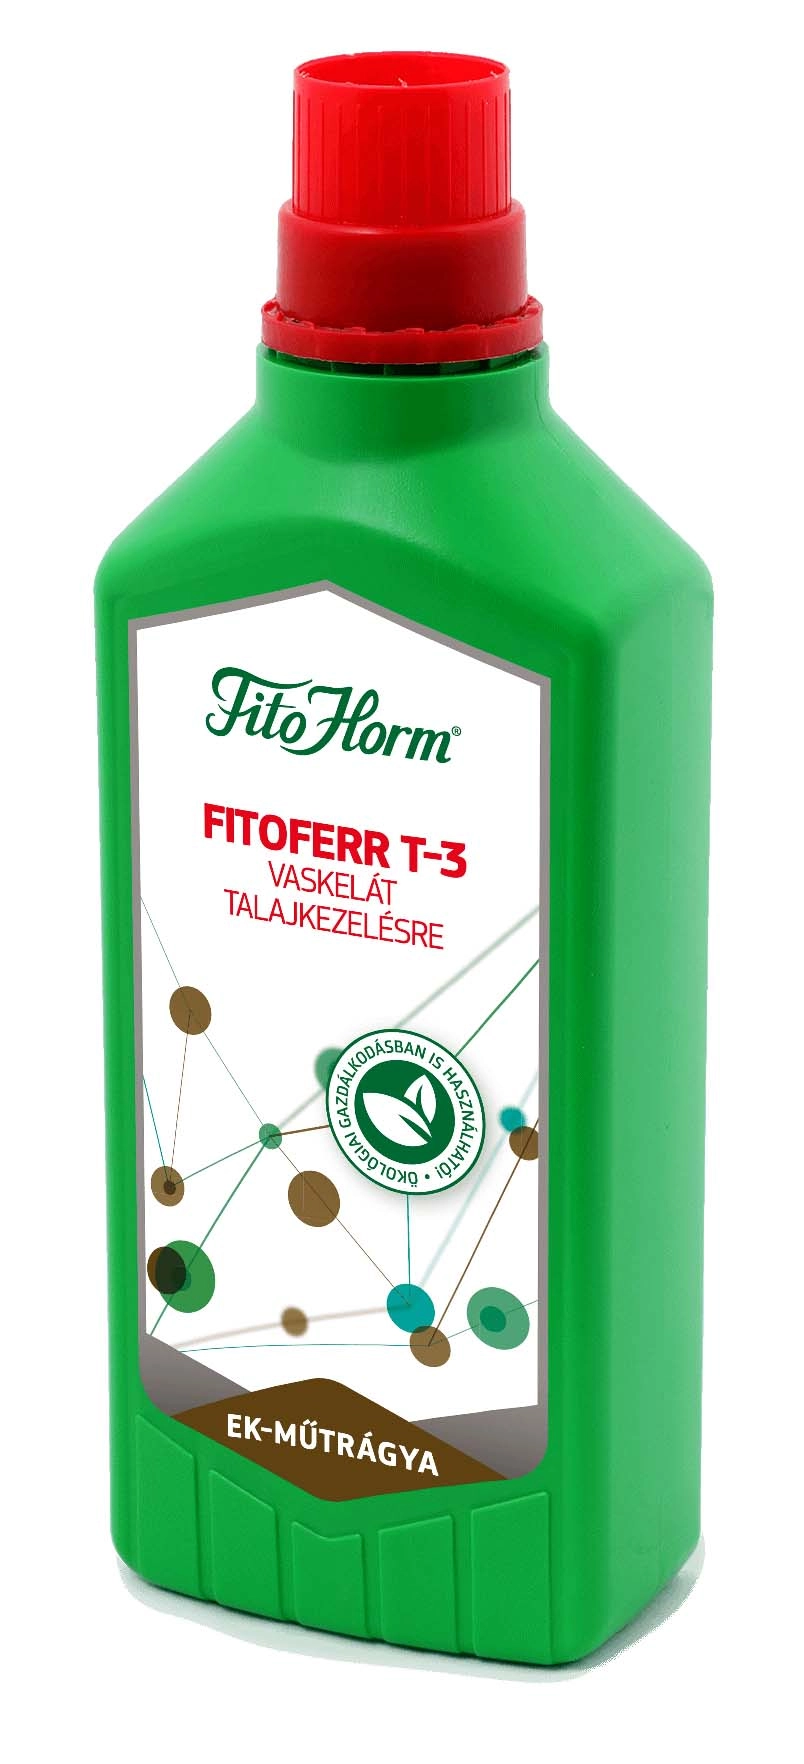 FitoHorm Fitoferr T-3 vaskelát talajkezelésre